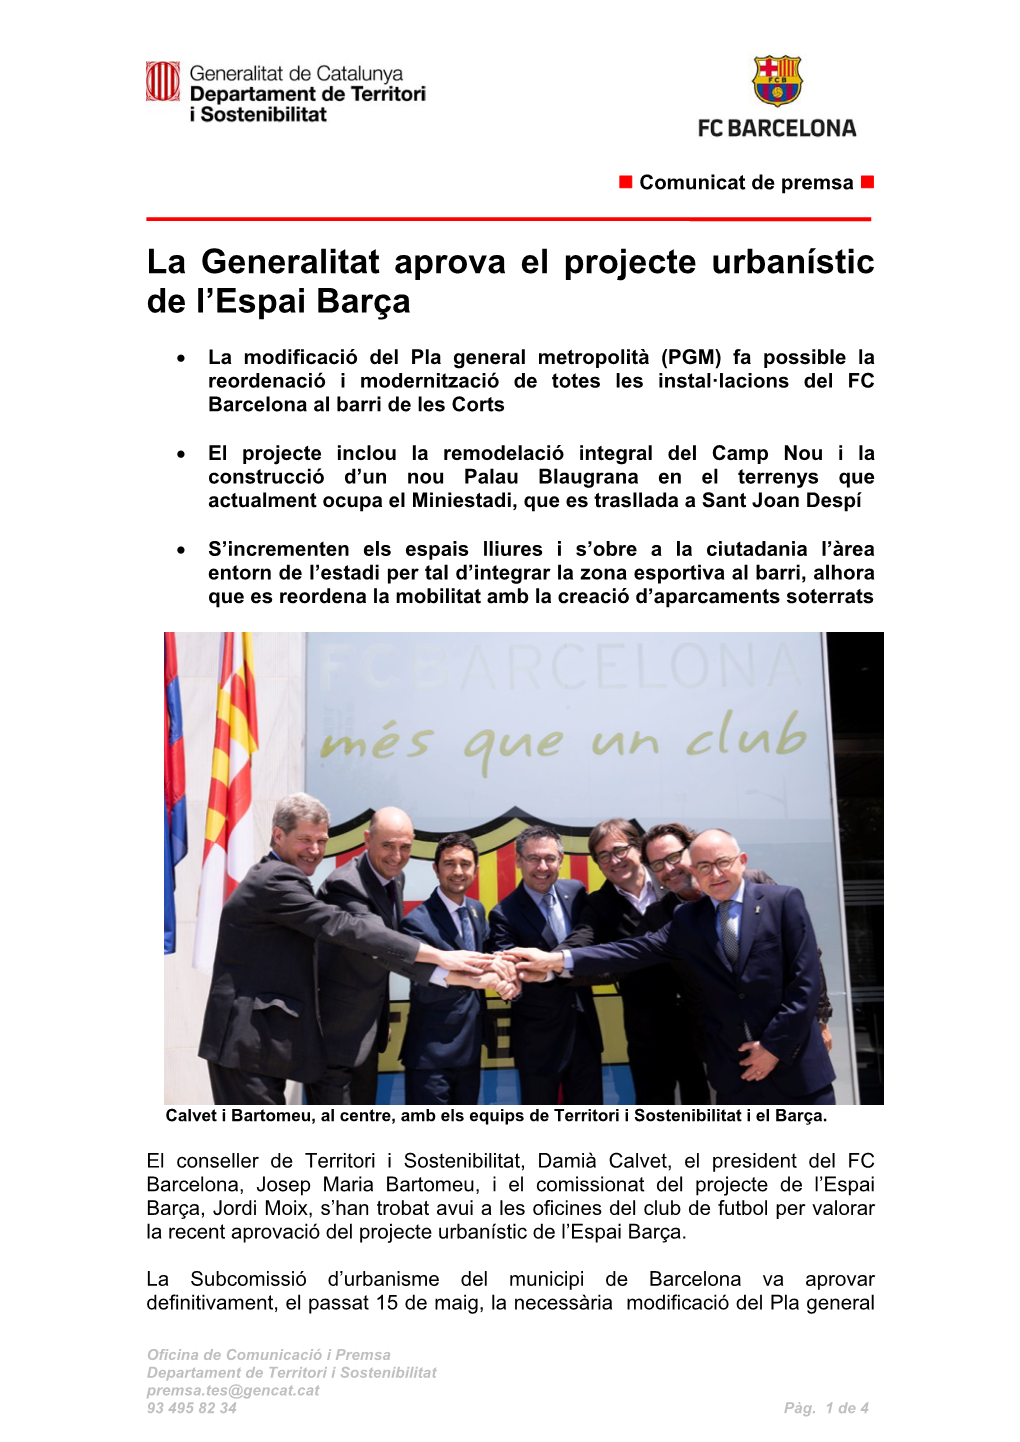 La Generalitat Aprova El Projecte Urbanístic De L'espai Barça